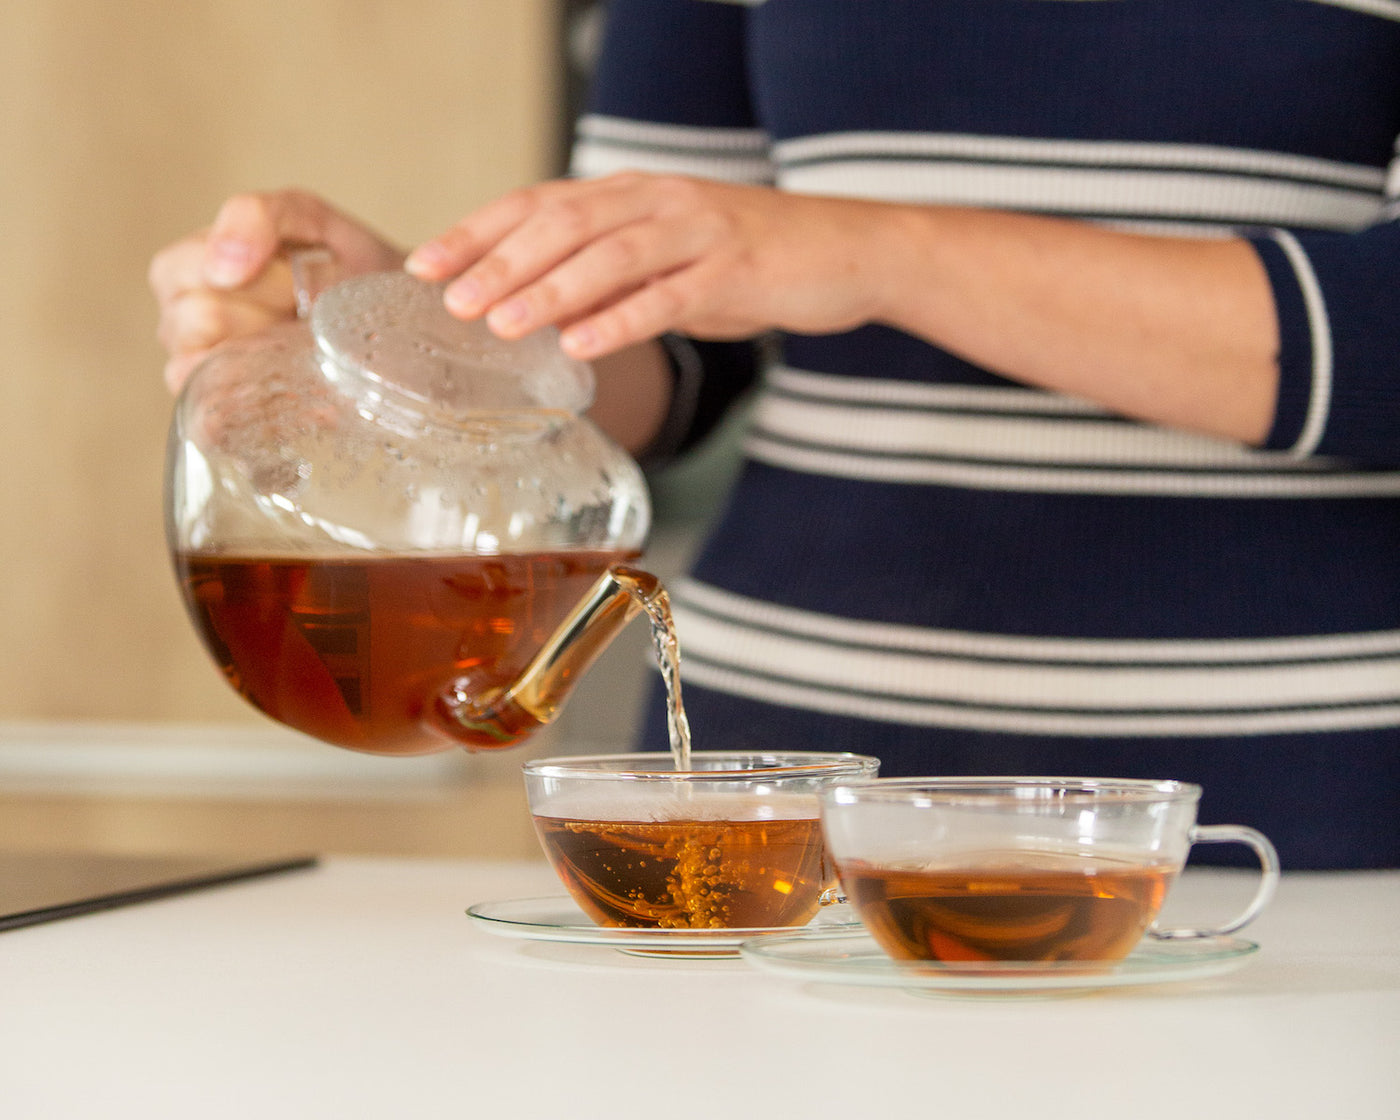 Skleněná konvice na čaj Simax Saturn při nalévání čaje a skleněné hrnky Simax Saturn